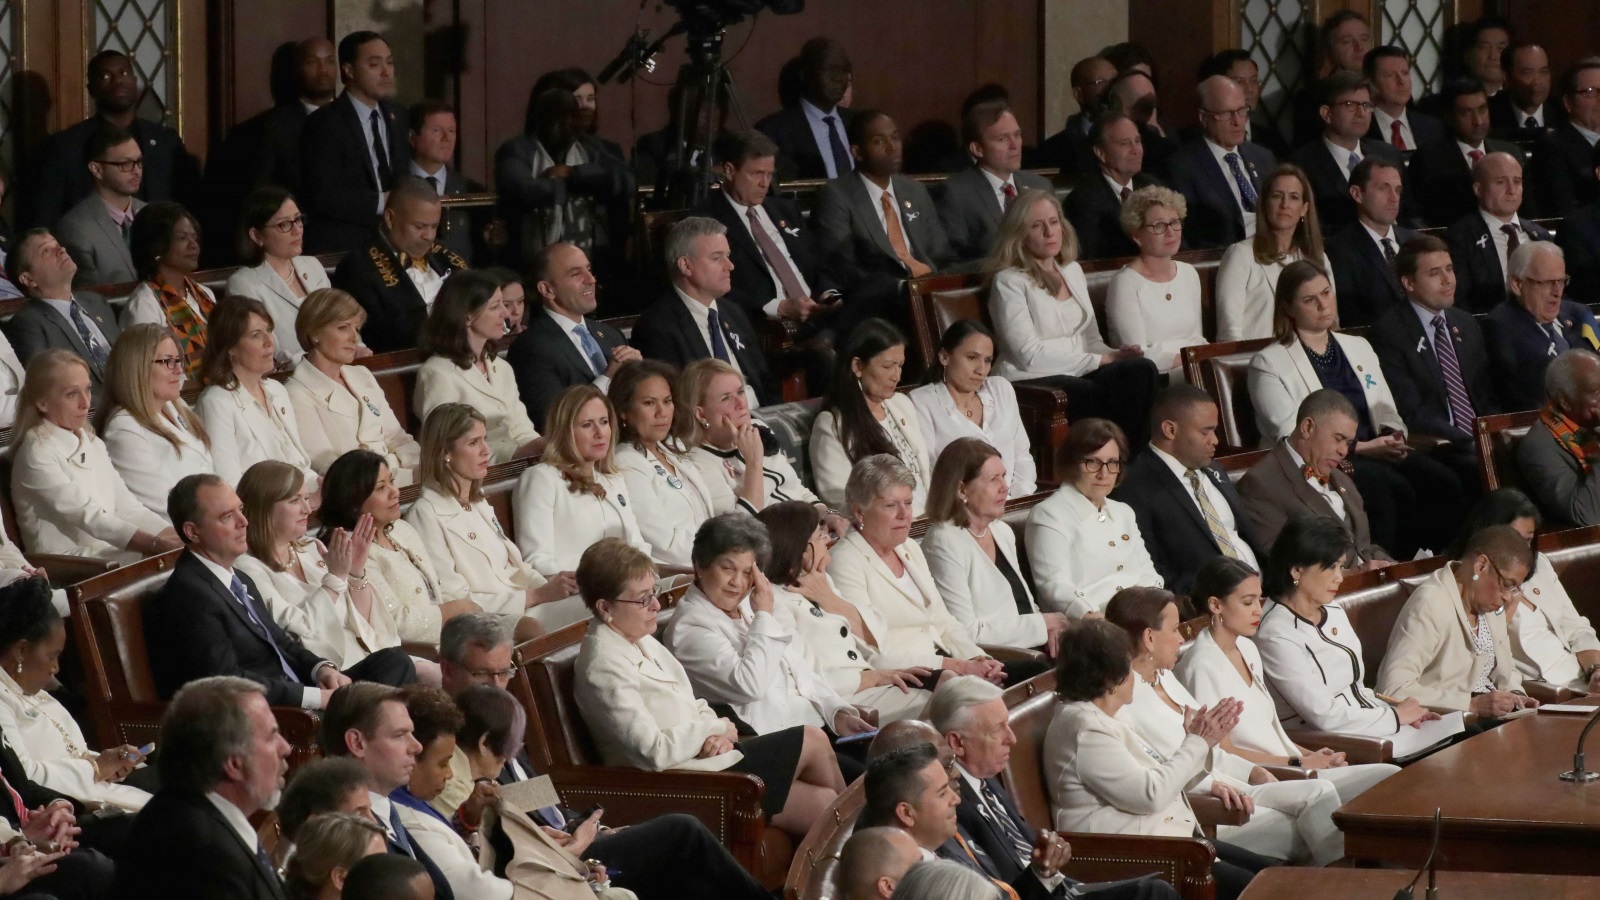 ‪عضوات الكونغرس الديمقراطيات باللون الأبيض في لحظة تاريخية تعبر عن موقفهن من قضايا المرأة خلال خطاب الرئيس ترامب‬  (الفرنسية)